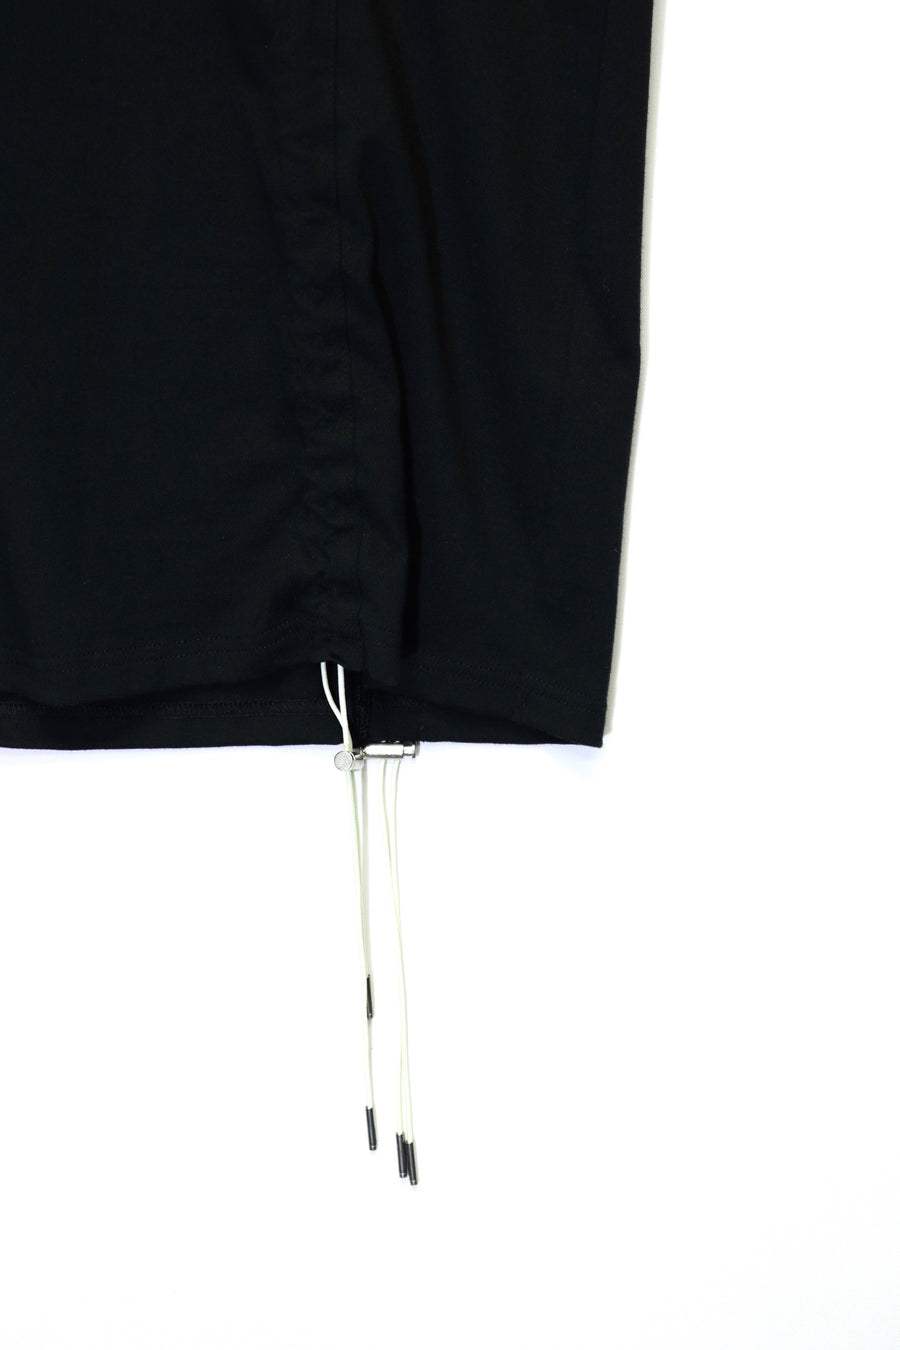 SYU.HOMME/FEMM  Short shrink sleeves（BLACK）